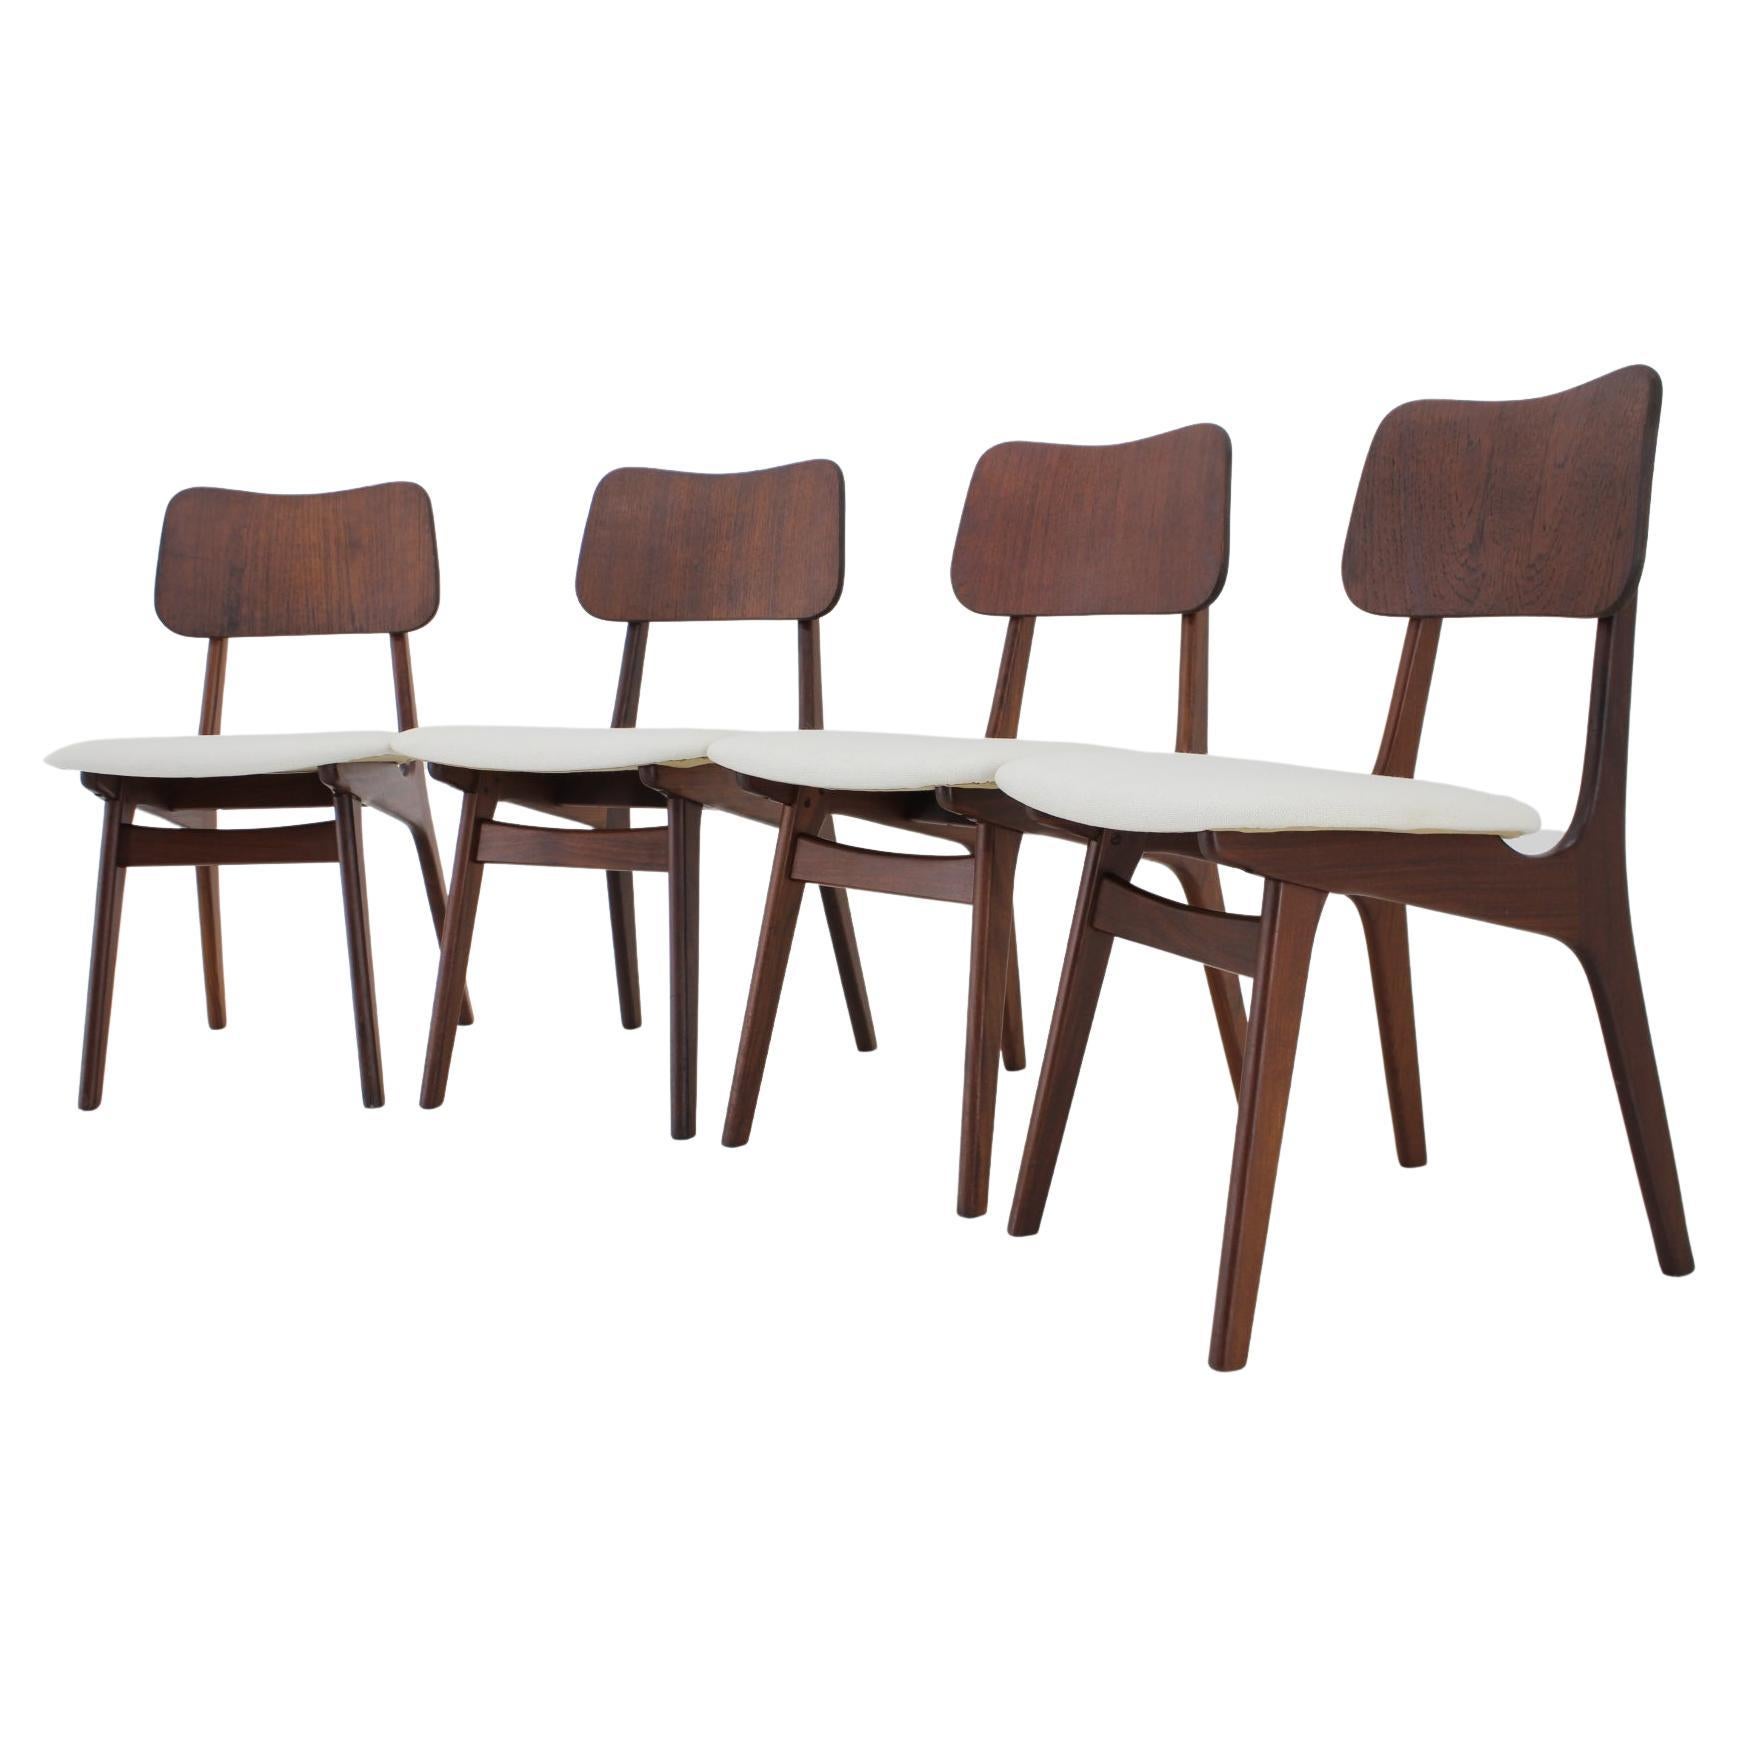 Set aus 4 Esszimmerstühlen aus Teakholz, Modell 74, Ib Kofod-Larsen, Dänemark, 1960er Jahre